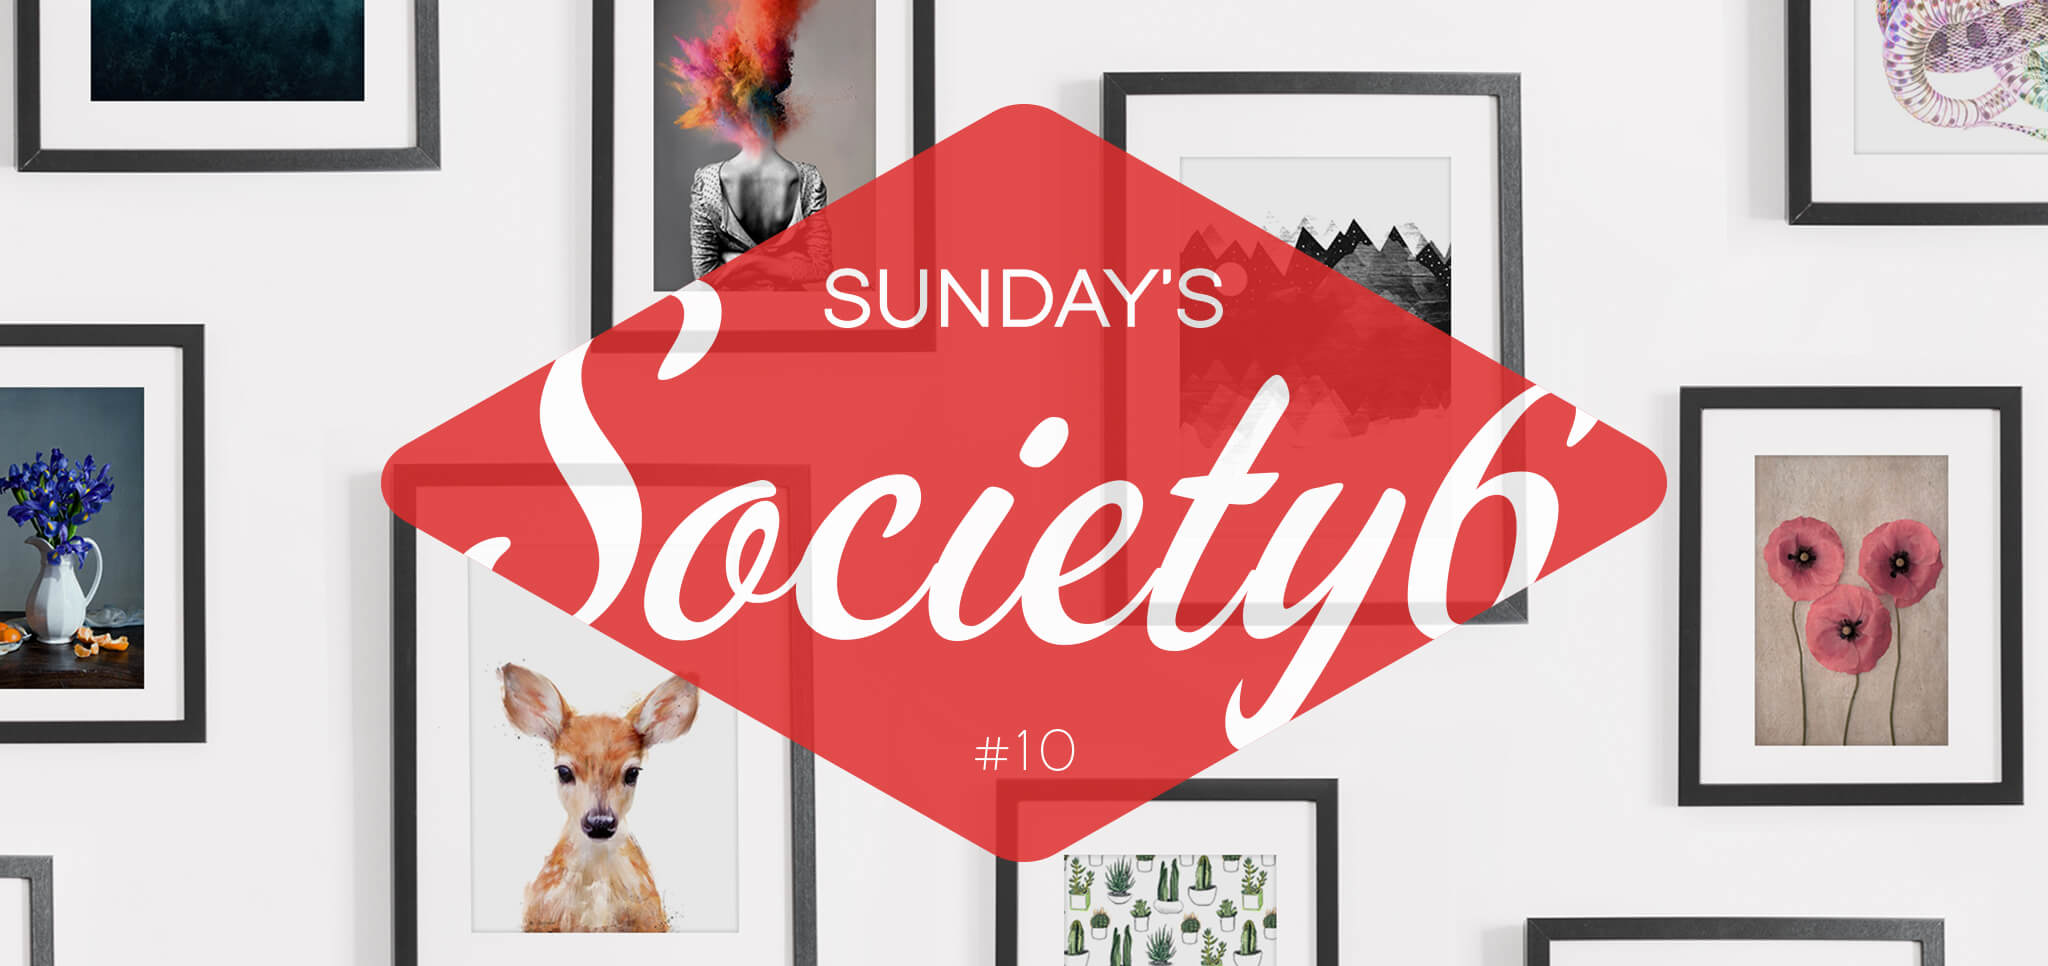 Sunday’s Society6 – #10